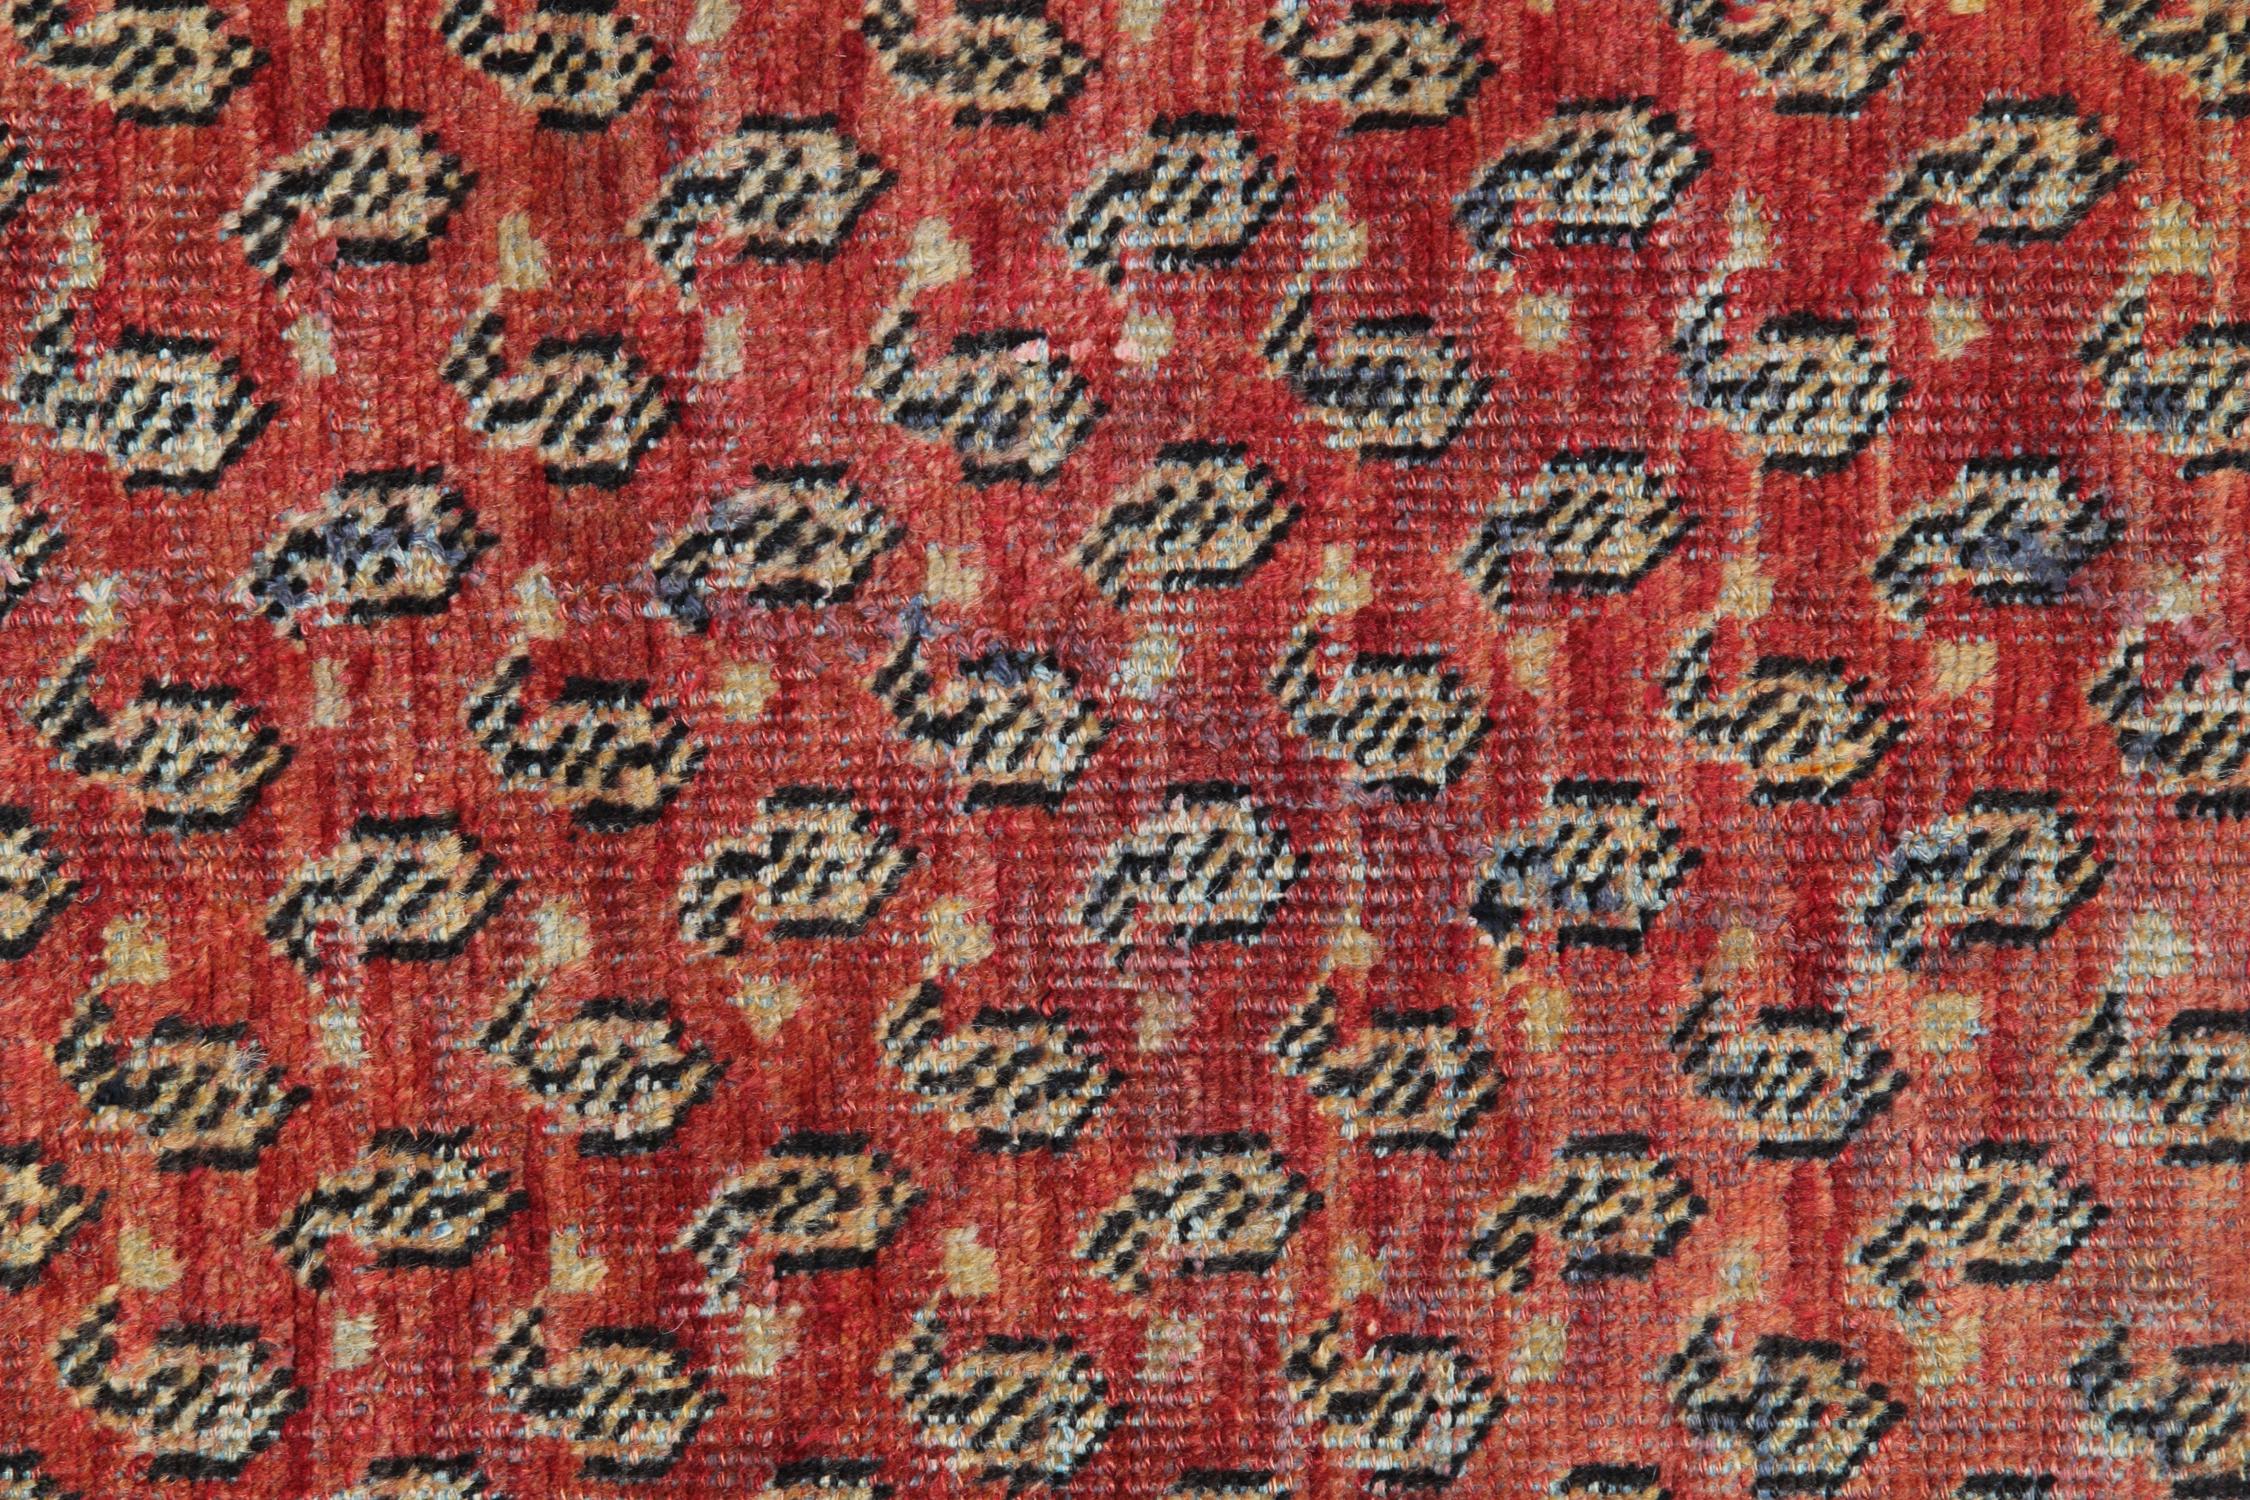 Dieser Vintage-Teppich wurde in Handarbeit aus feinen organischen Materialien hergestellt. Mit traditionellem Design und Farbpalette gewebt. Das zentrale Design zeigt einen satten roten Hintergrund mit beigen, blauen und braunen Akzenten, die ein